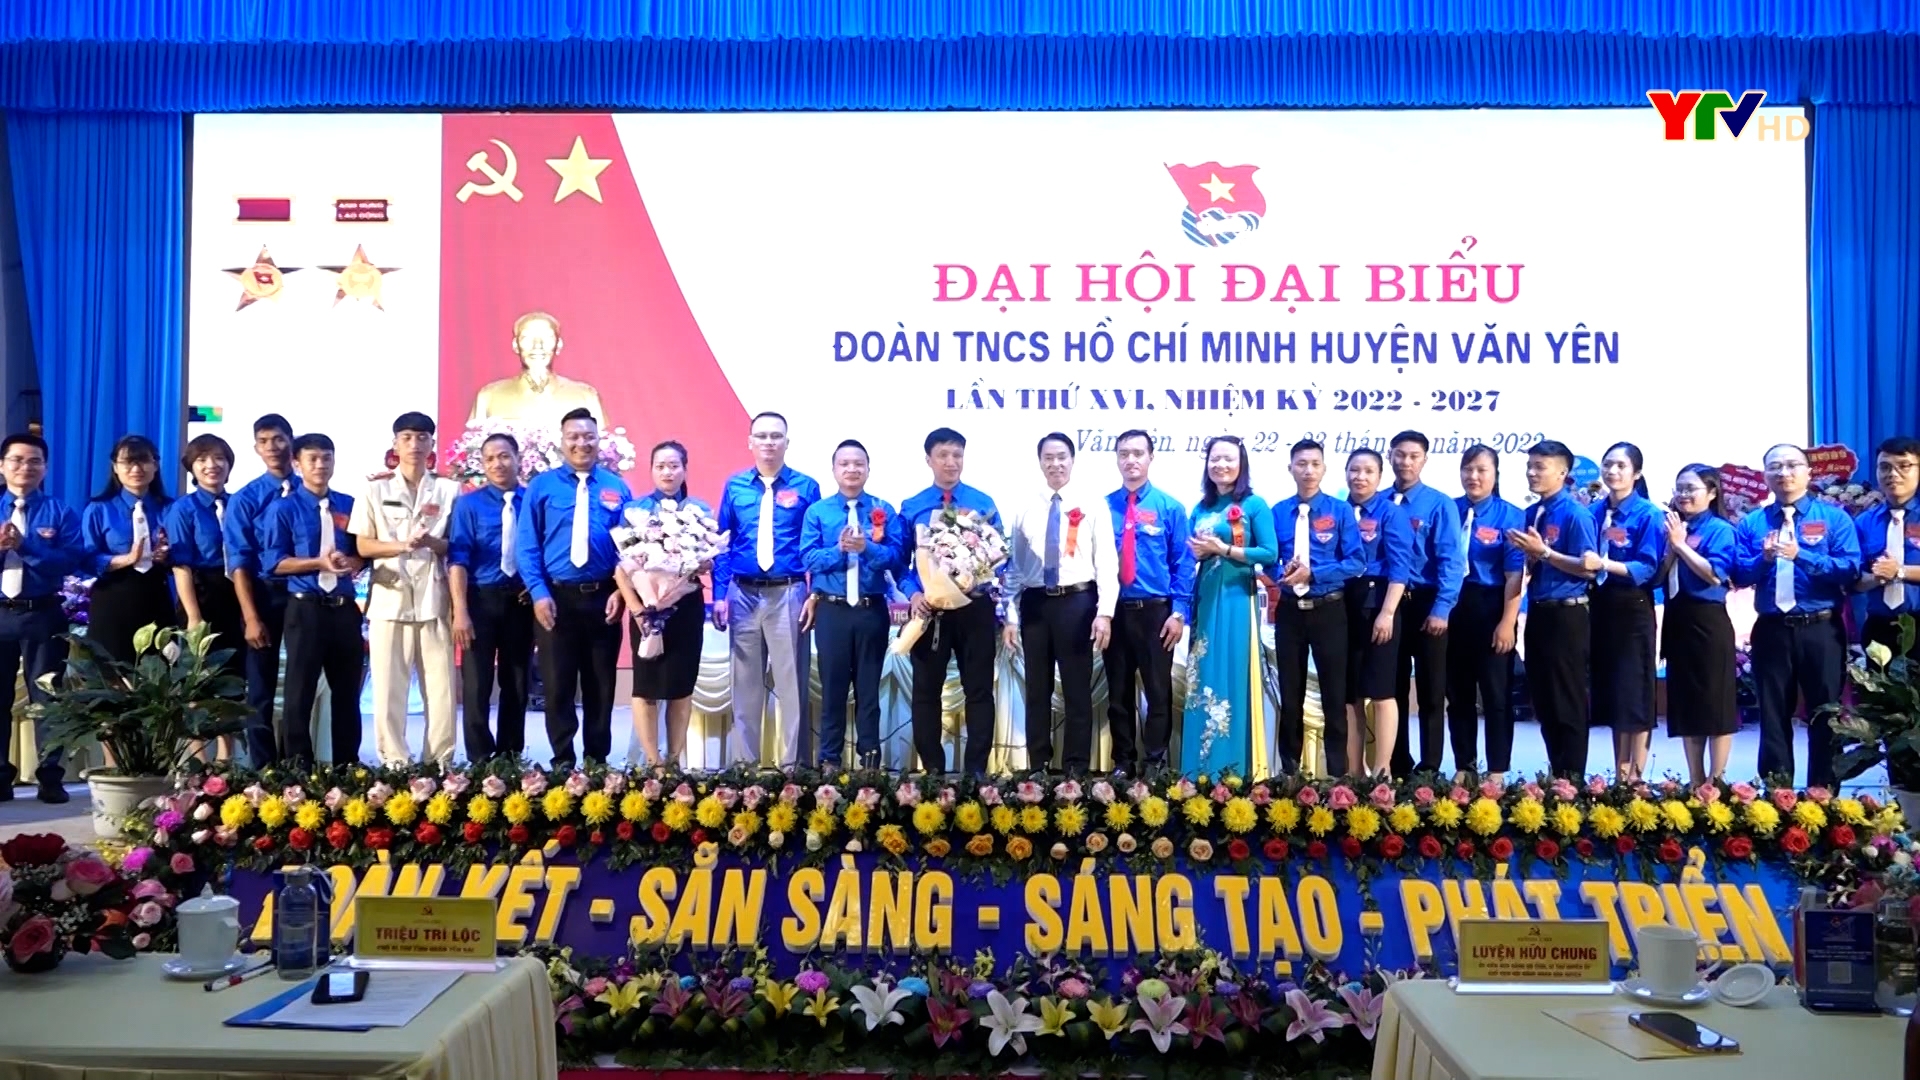 Đại hội đại biểu Đoàn thanh niên huyện Văn Yên và thị xã Nghĩa Lộ, nhiệm kỳ 2022 - 2027